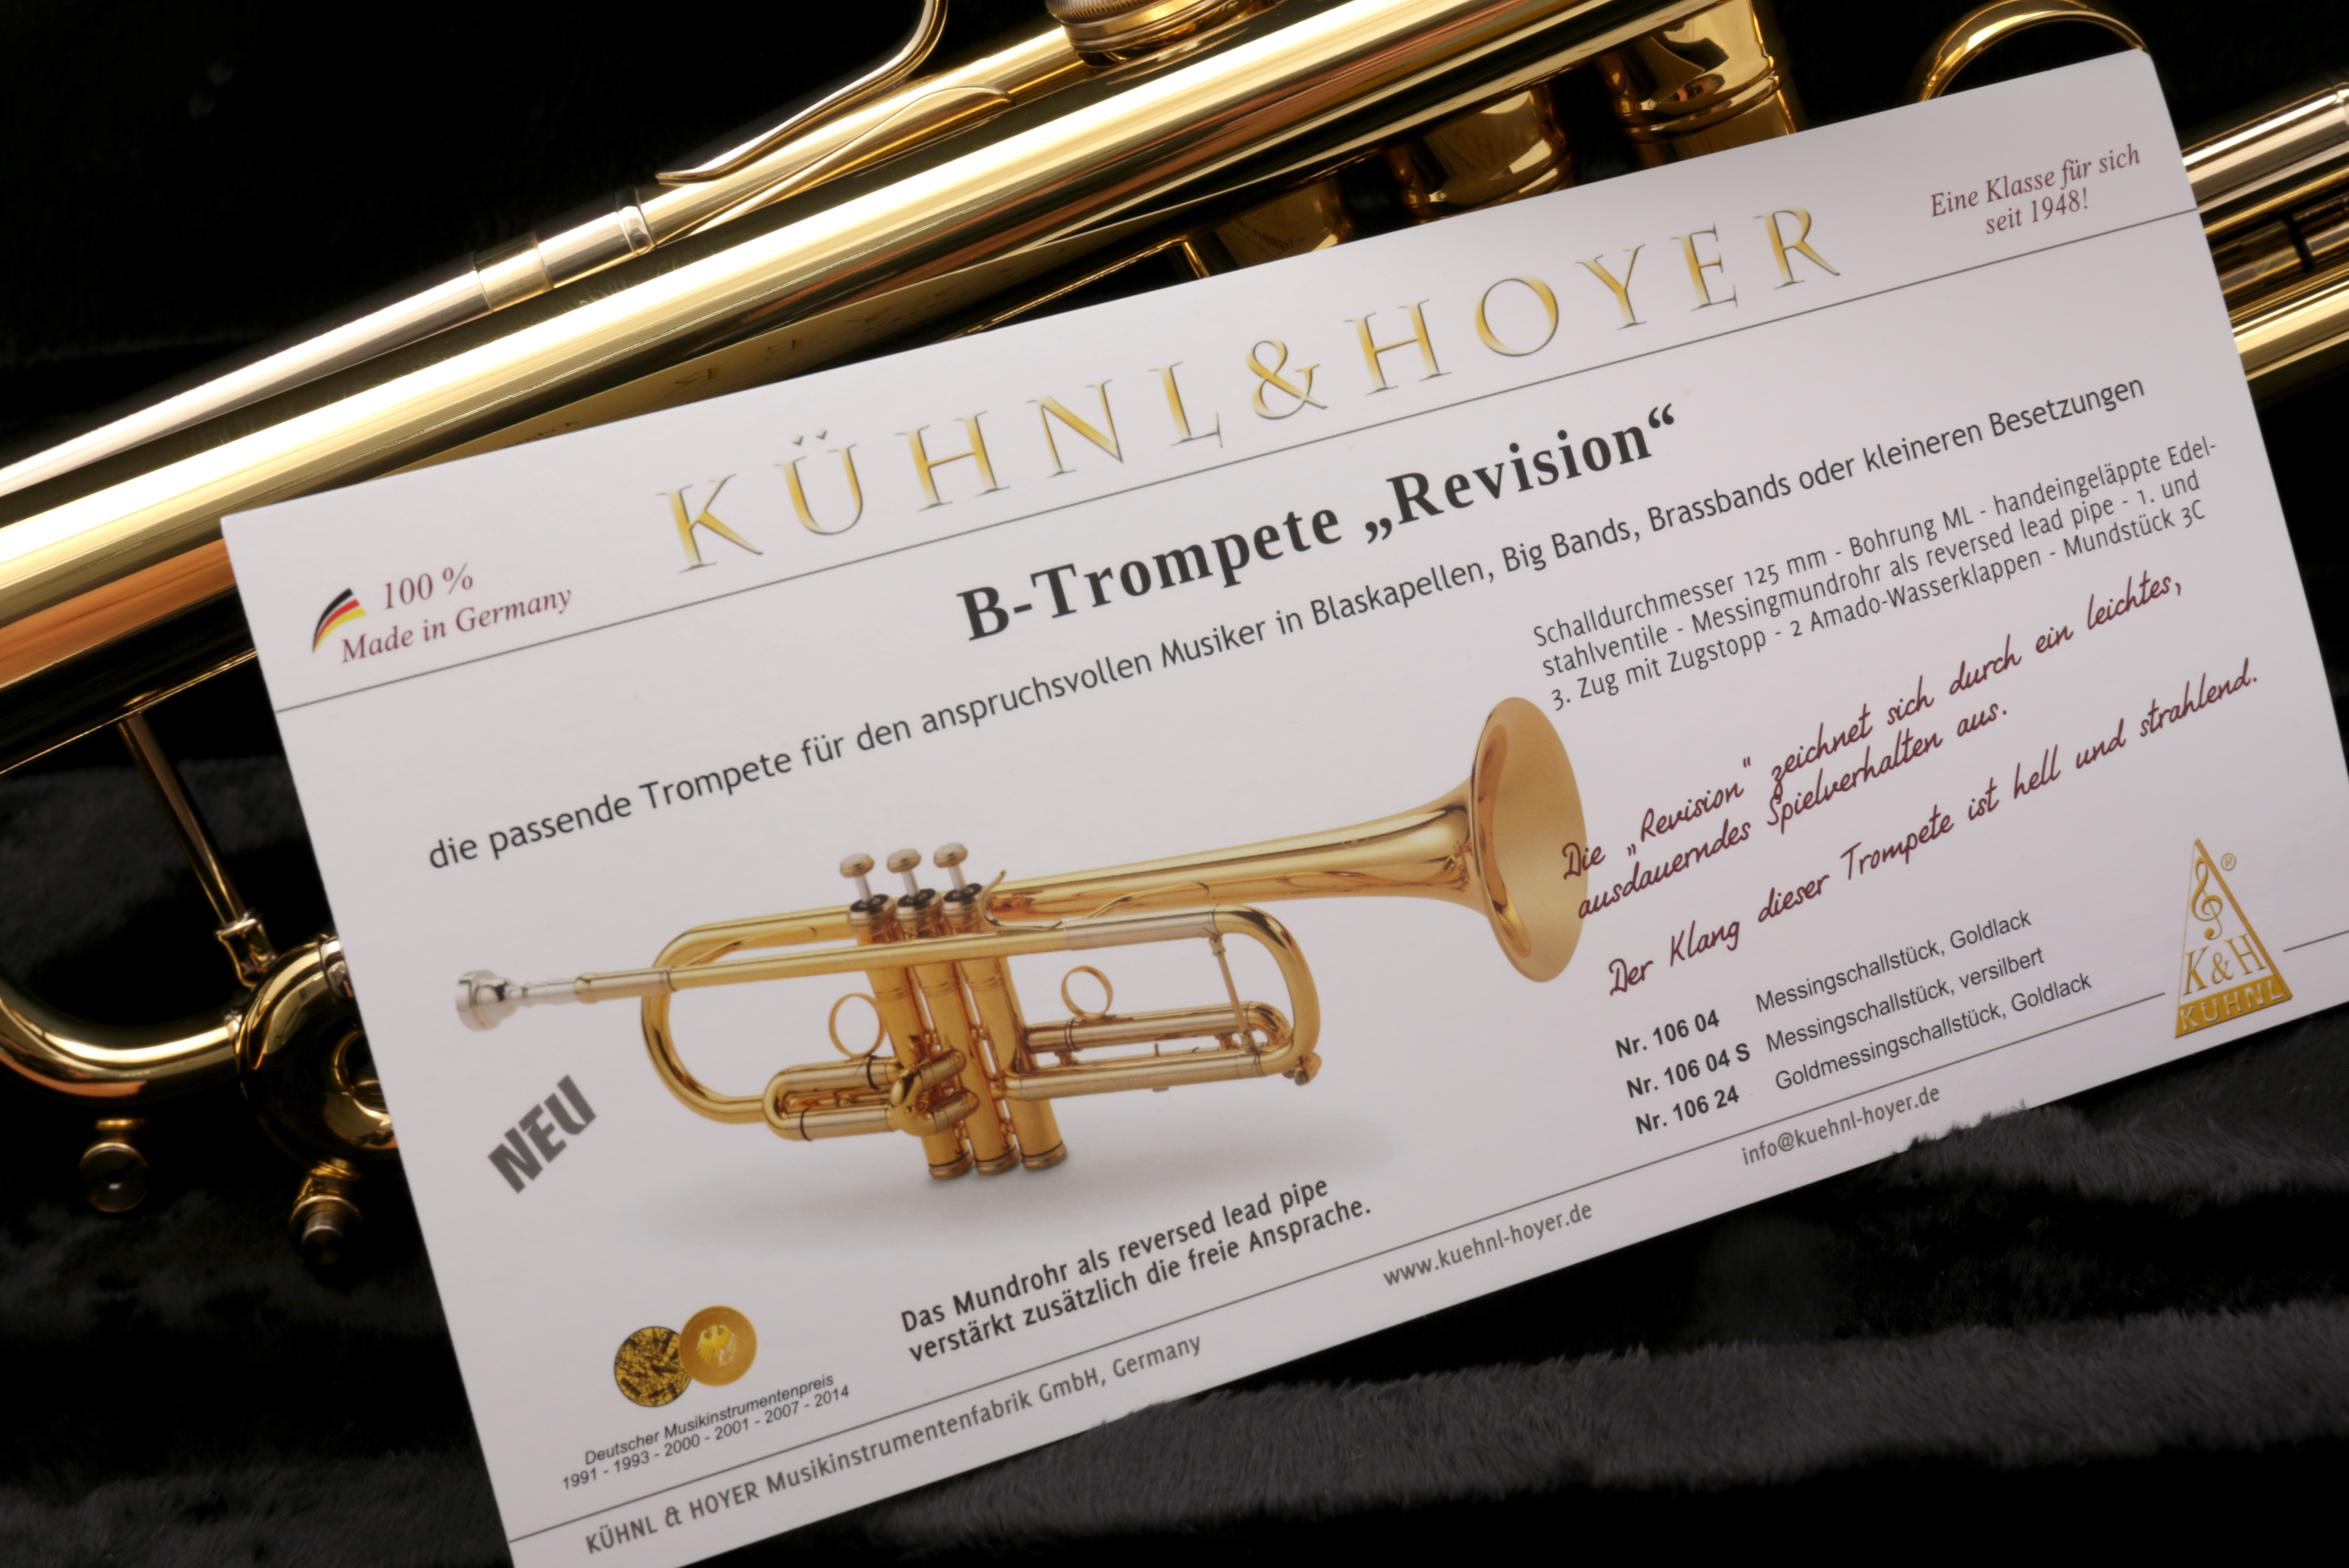 Revision Bb-Trompete mit Leichtetui